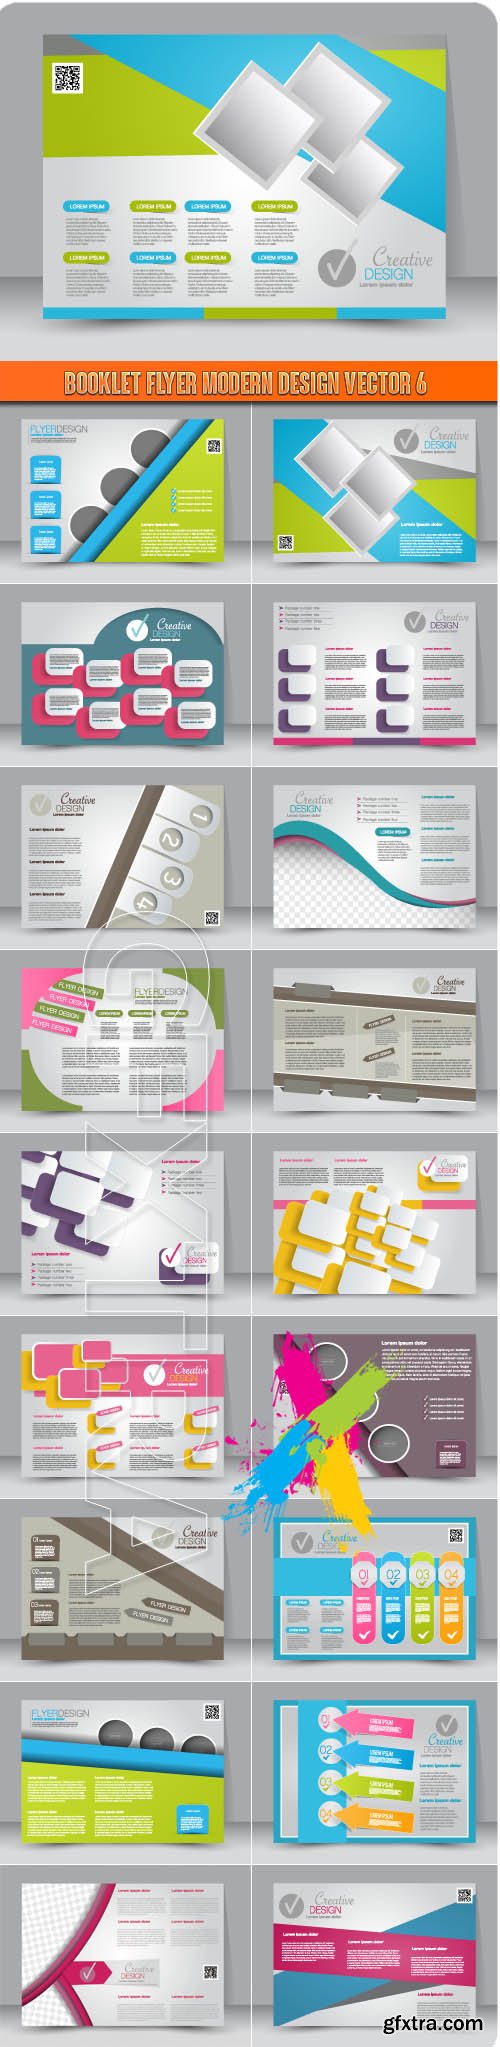 Booklet flyer modern design vector 6